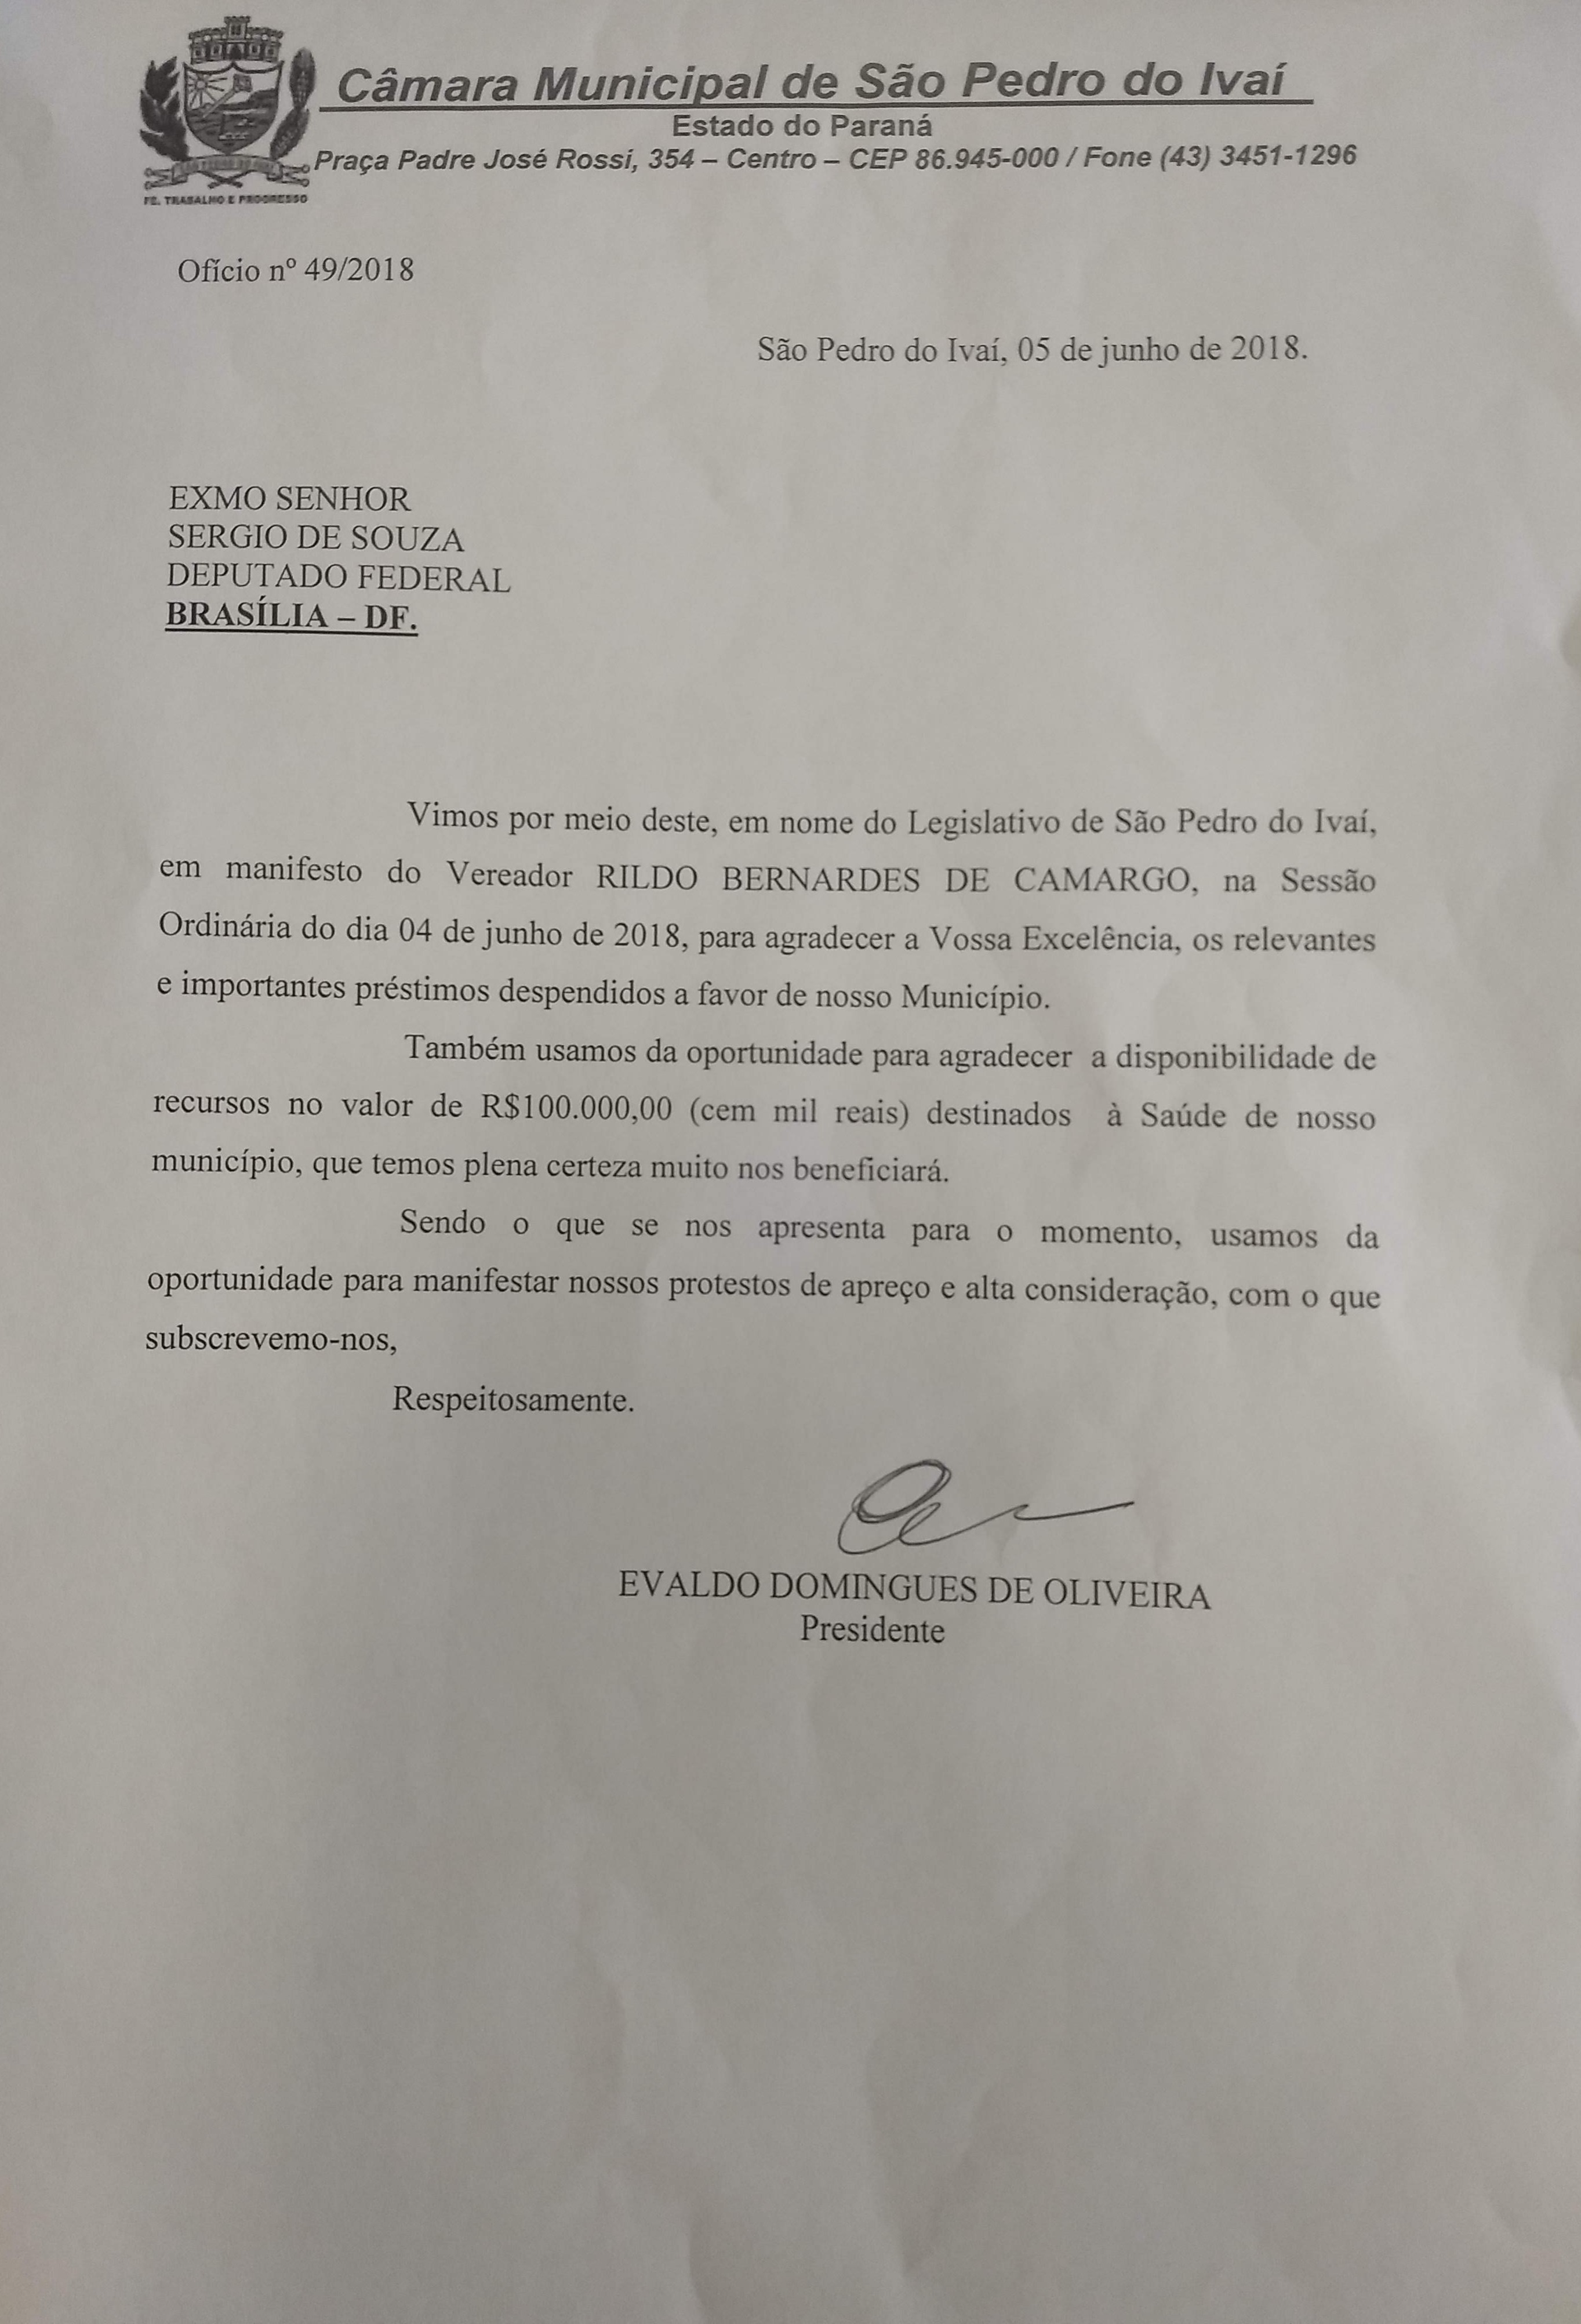 sao pedro do ivai - Ofício do Presidente da Câmara Municipal de São Pedro do Ivaí encaminhado ao deputado Sérgio Souza